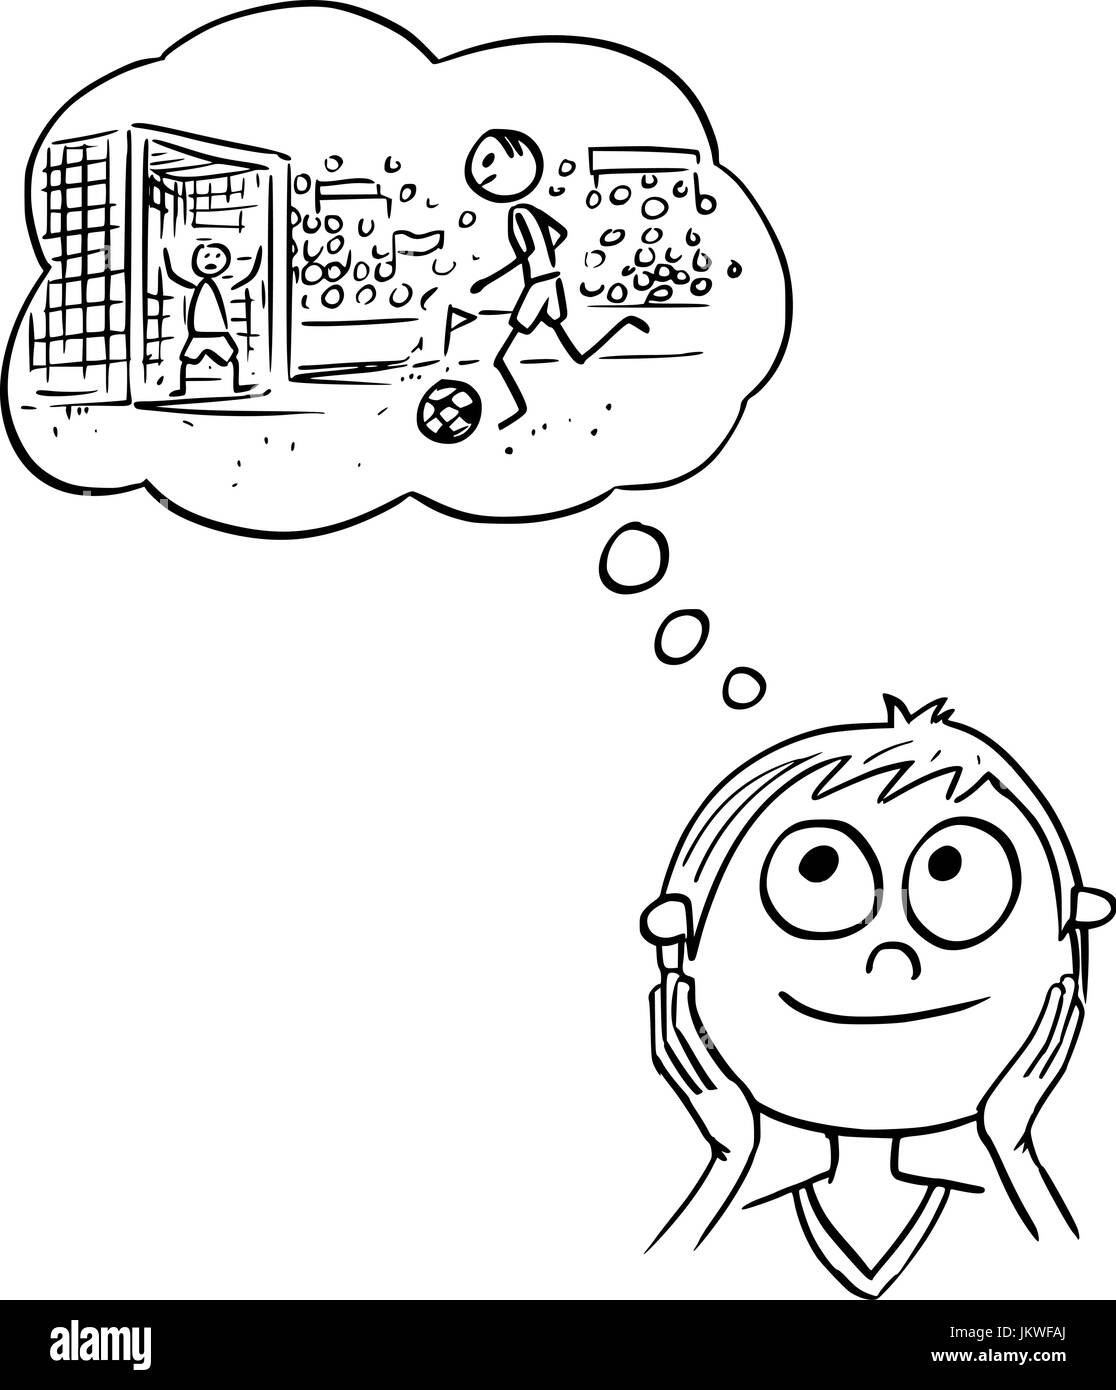 Dessin à la main cartoon vector illustration de garçon à rêver de football soccer player carrière. Illustration de Vecteur